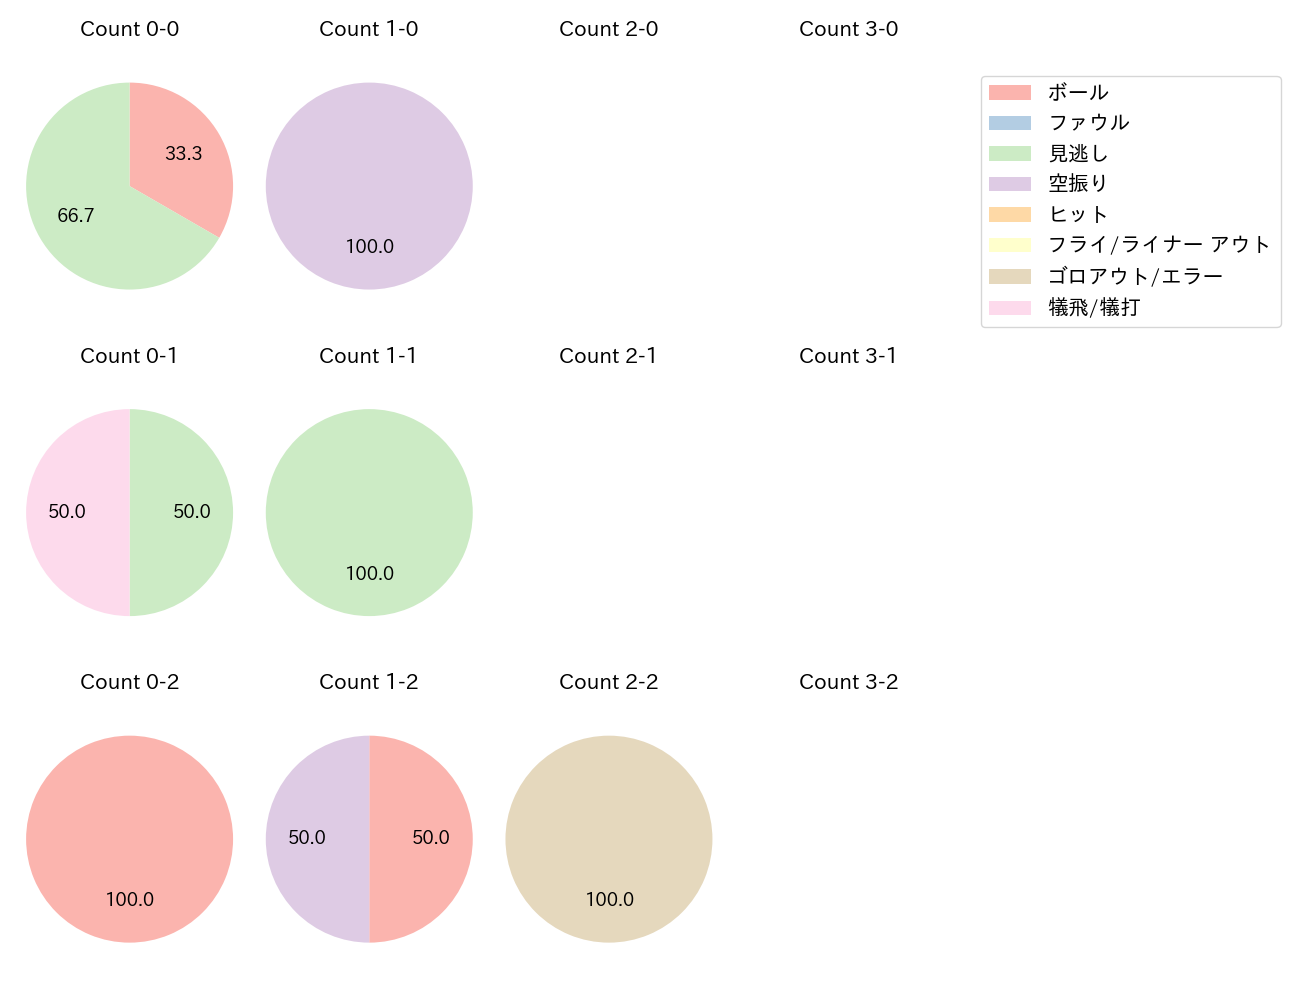 戸郷 翔征の球数分布(2021年3月)